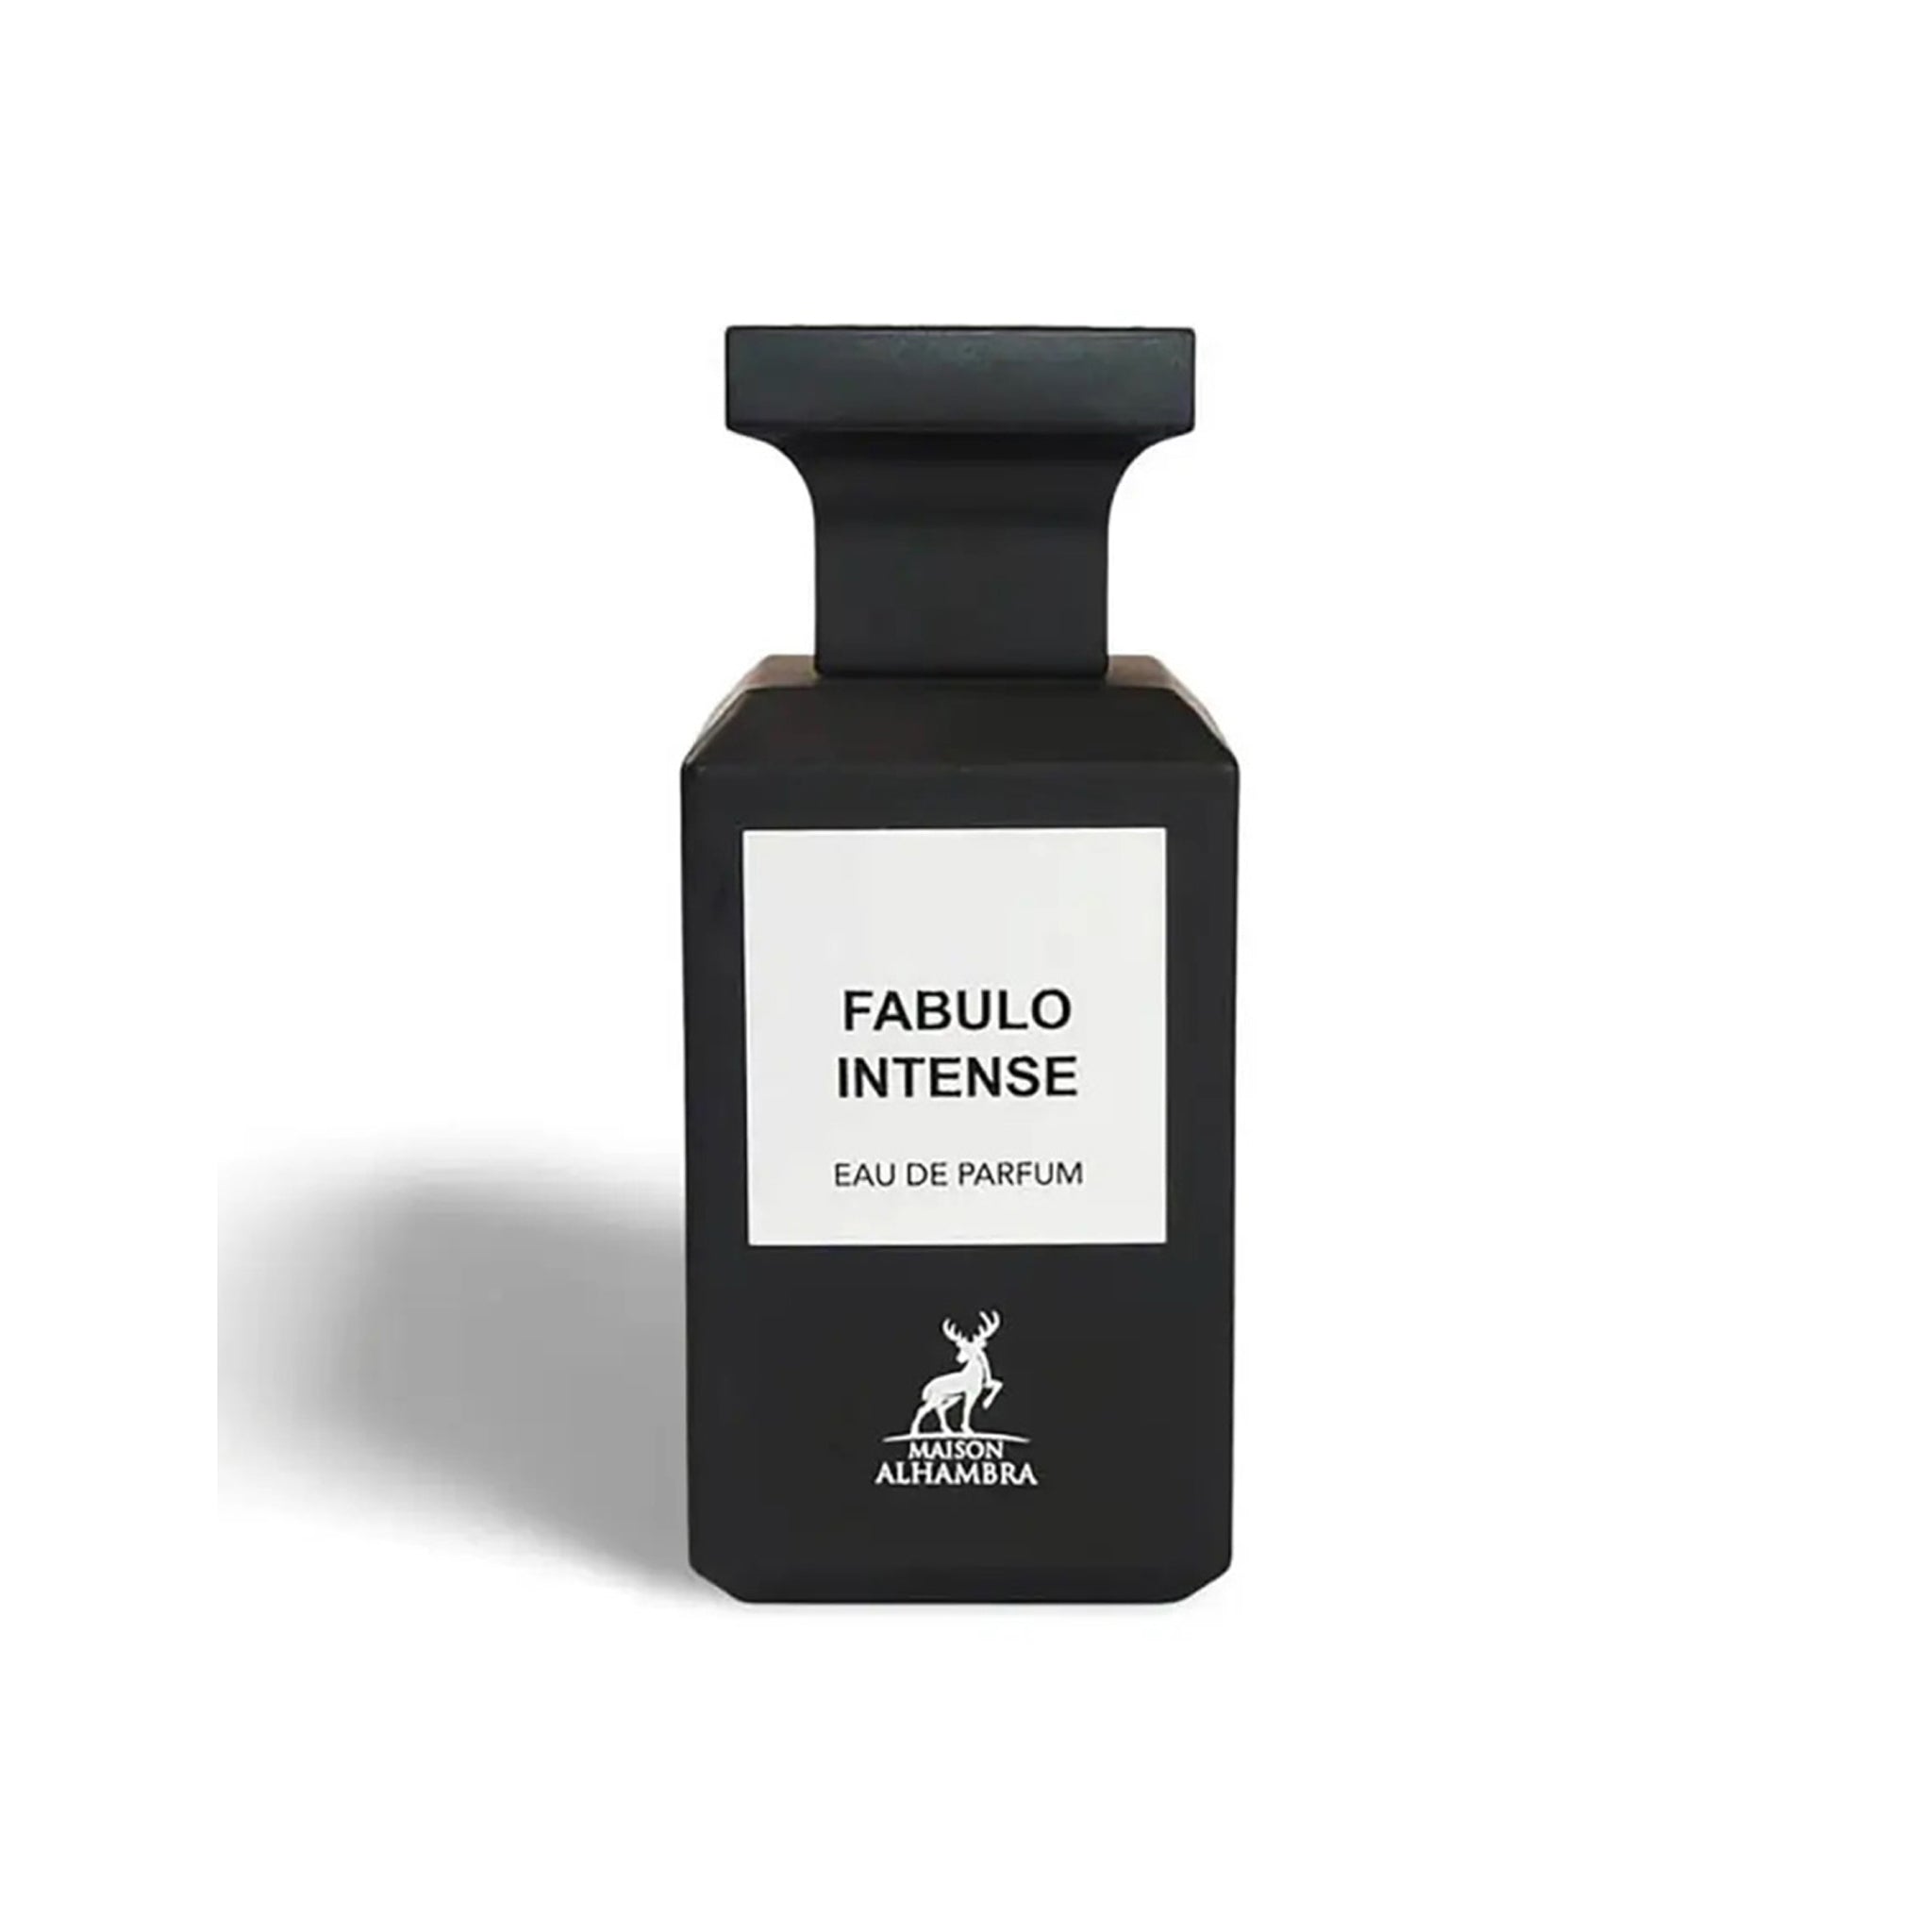 Fabulo Intense (Eau De Parfum 80ml) by Maison Alhambra